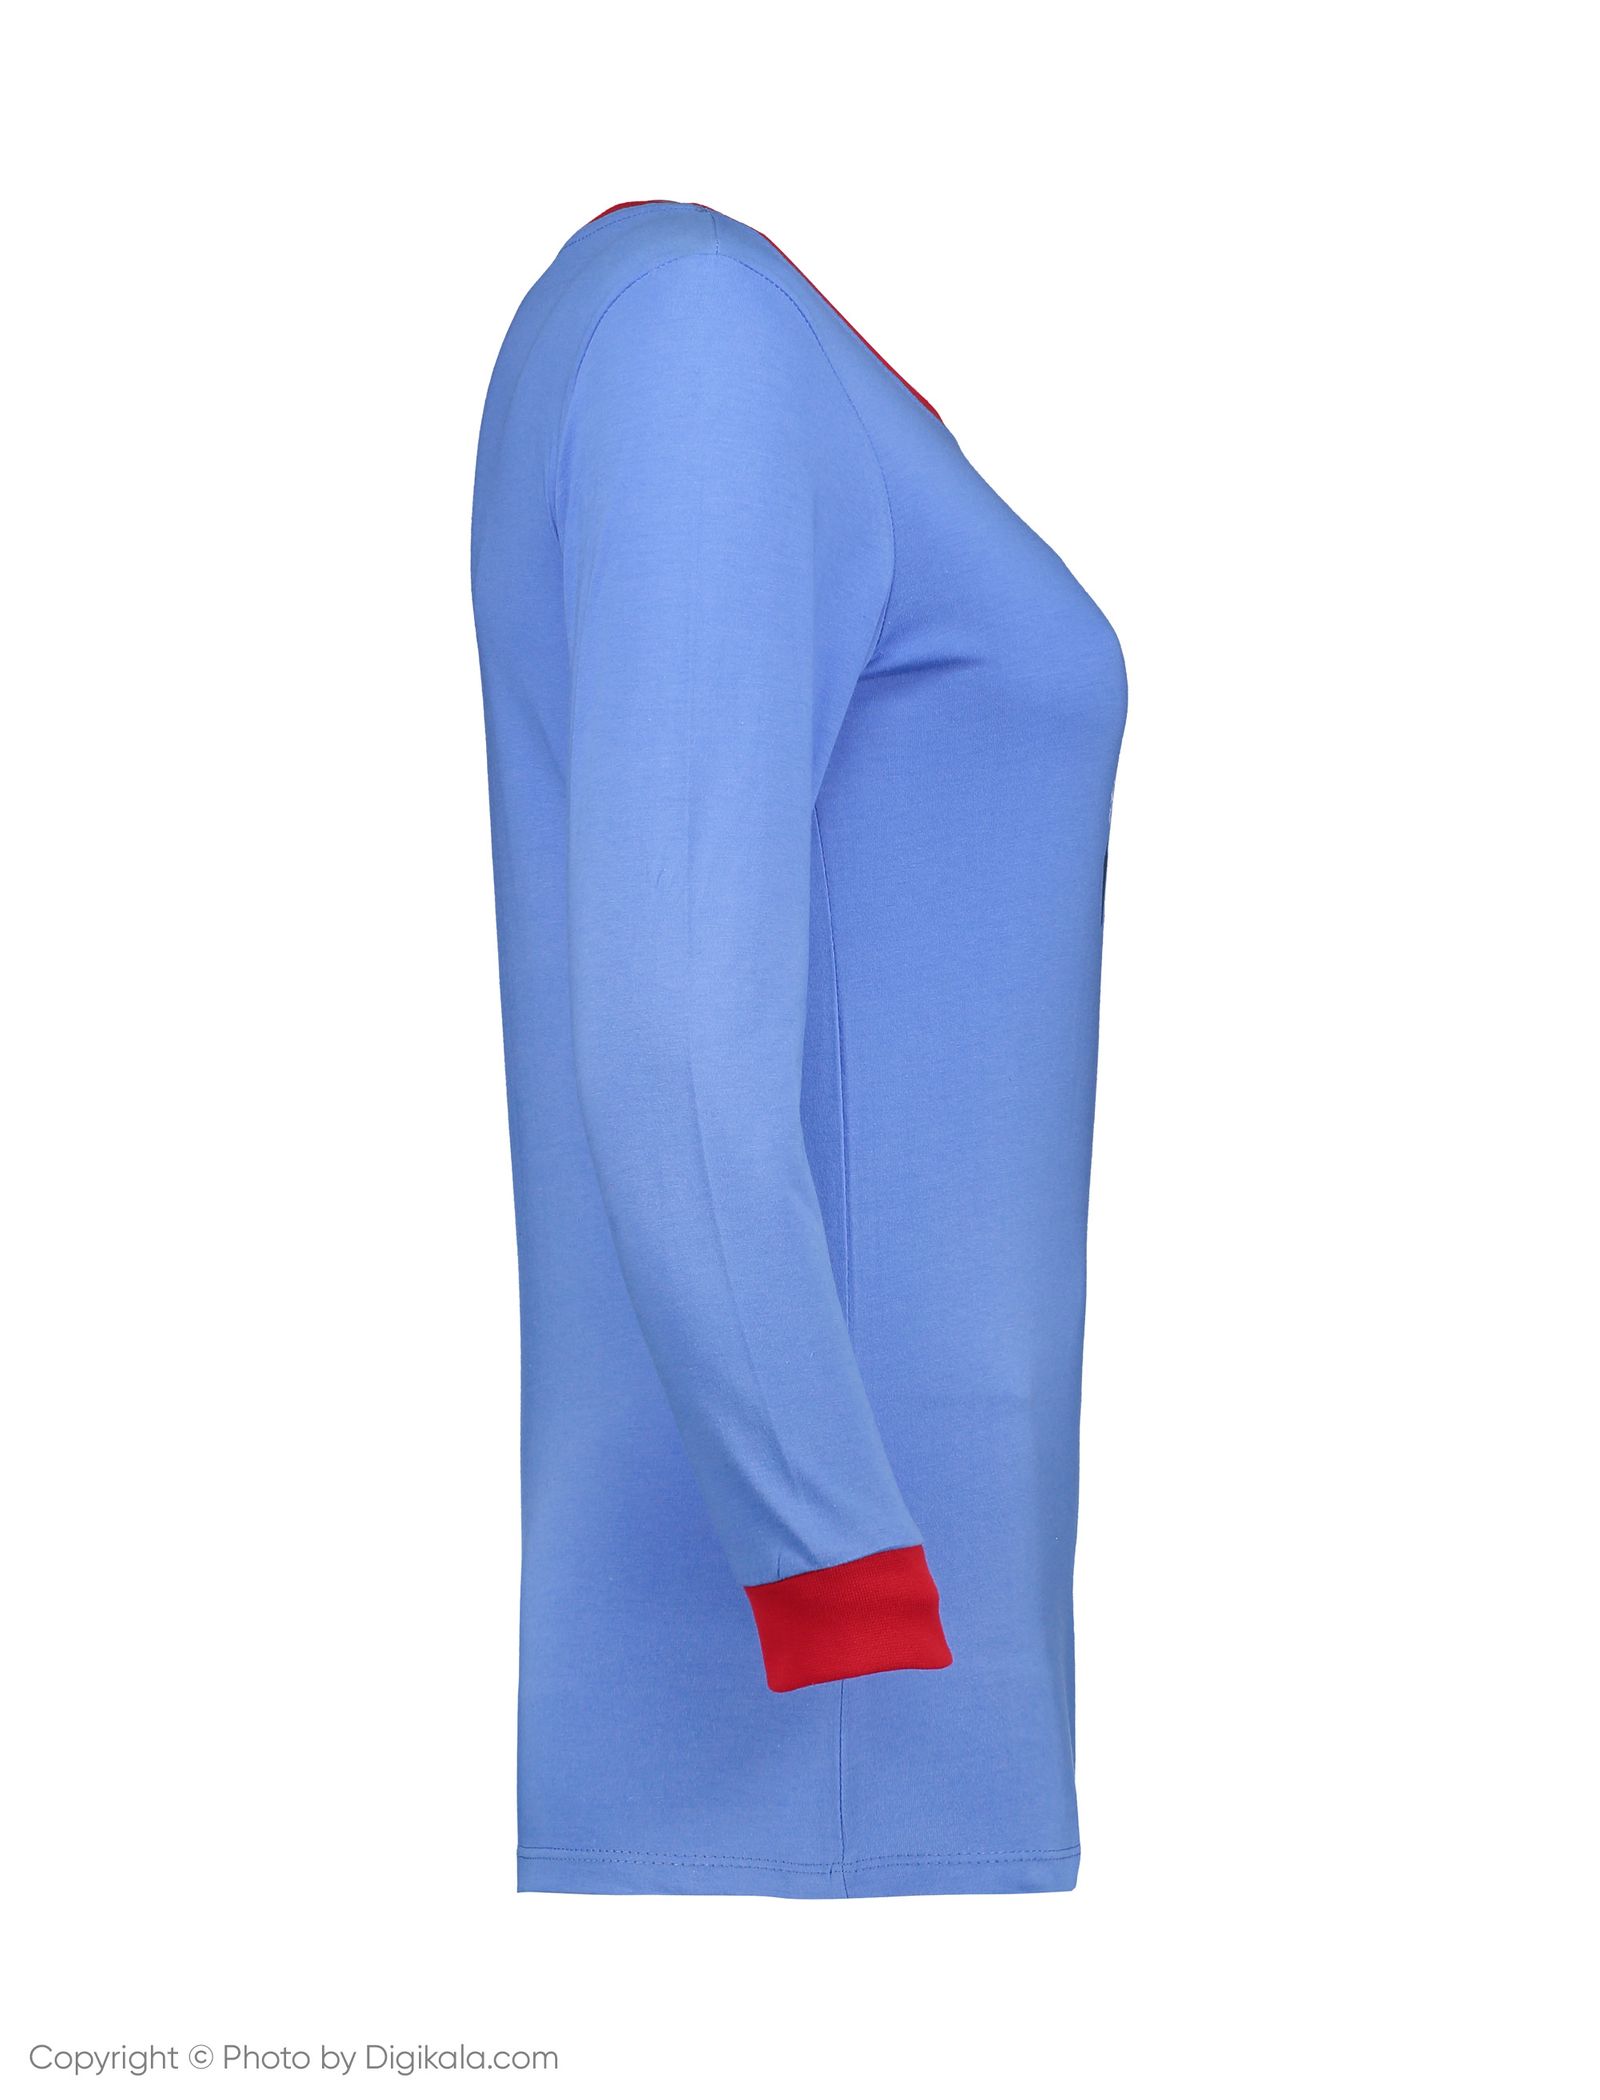 ست تی شرت و شلوار راحتی زنانه ناربن مدل 1521167-56 - آبی فولادی - 4